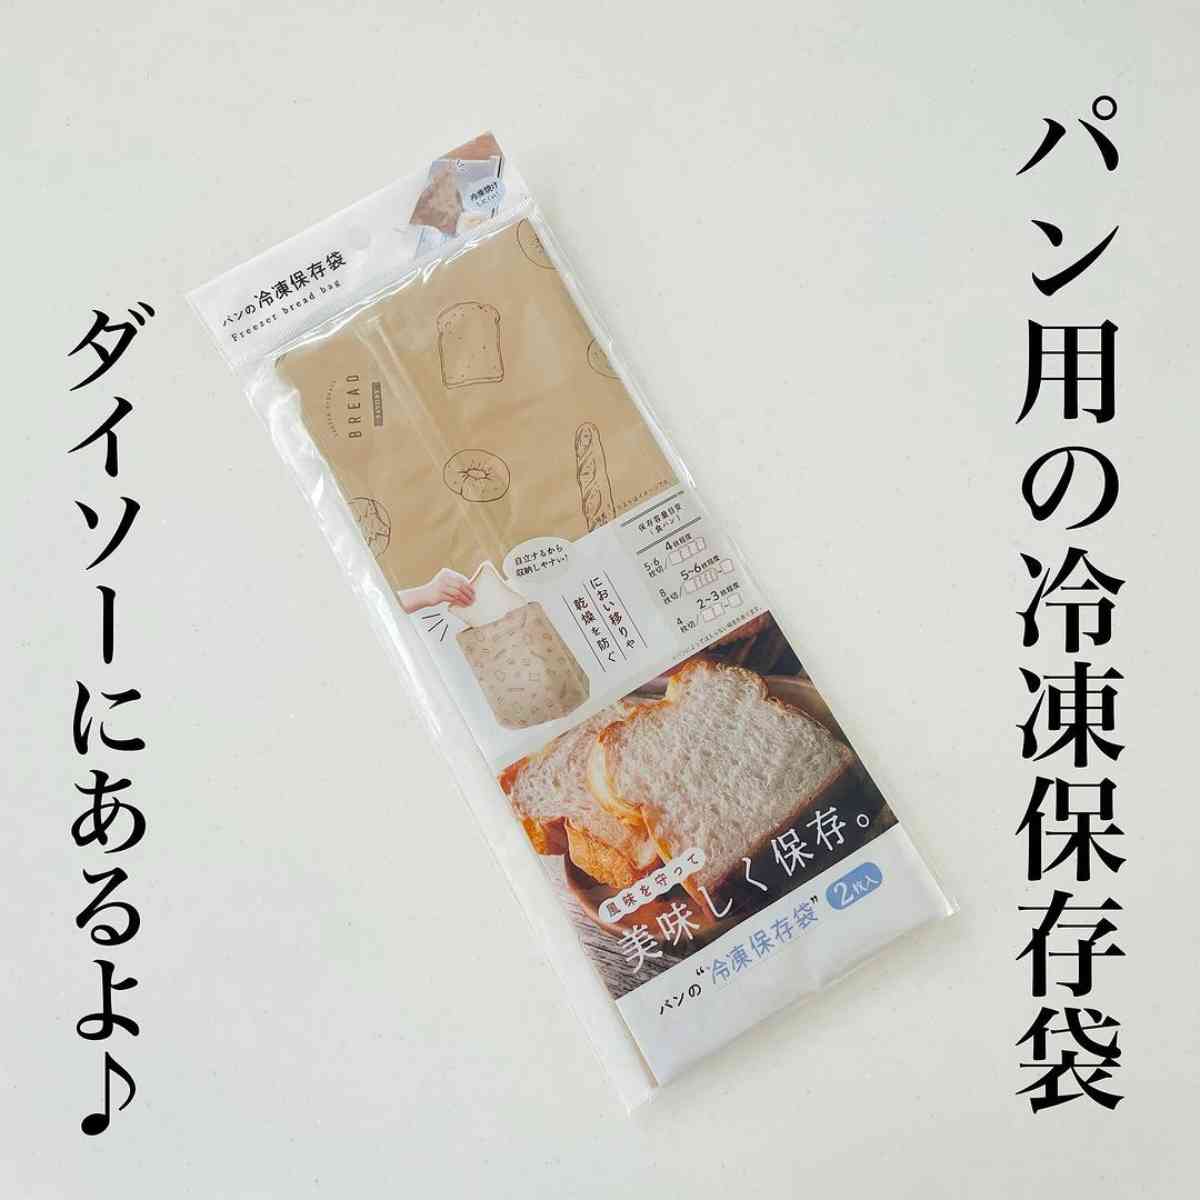 ダイソーの「パン冷凍保存袋」のパッケージ